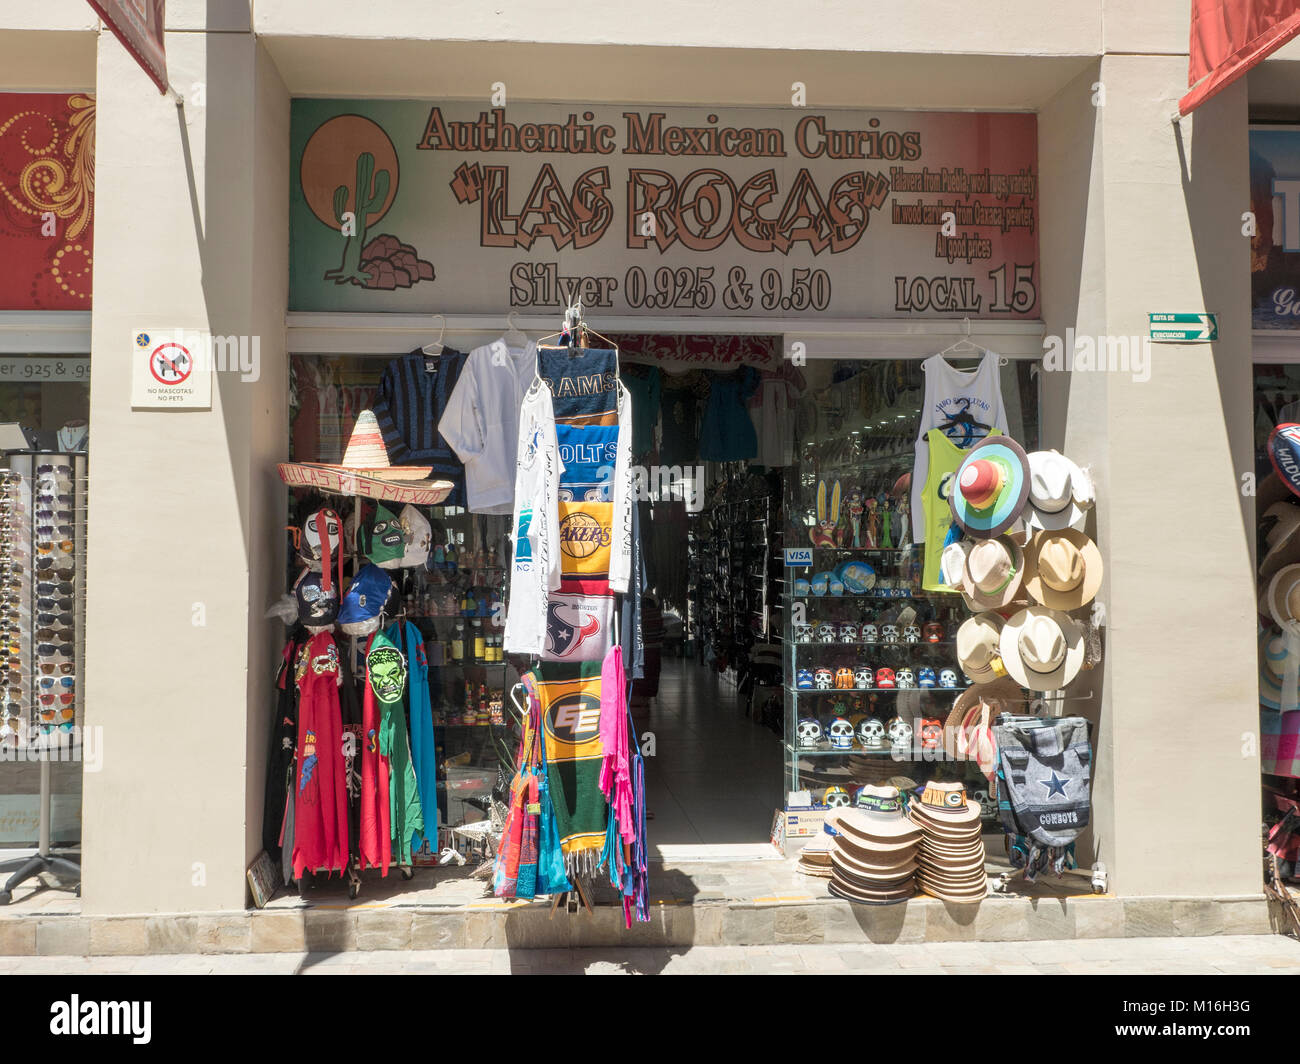 Las Rocas Mexican Curios And Tourist Souvenir Shop Cabo San Lucas Mexico Stock Photo